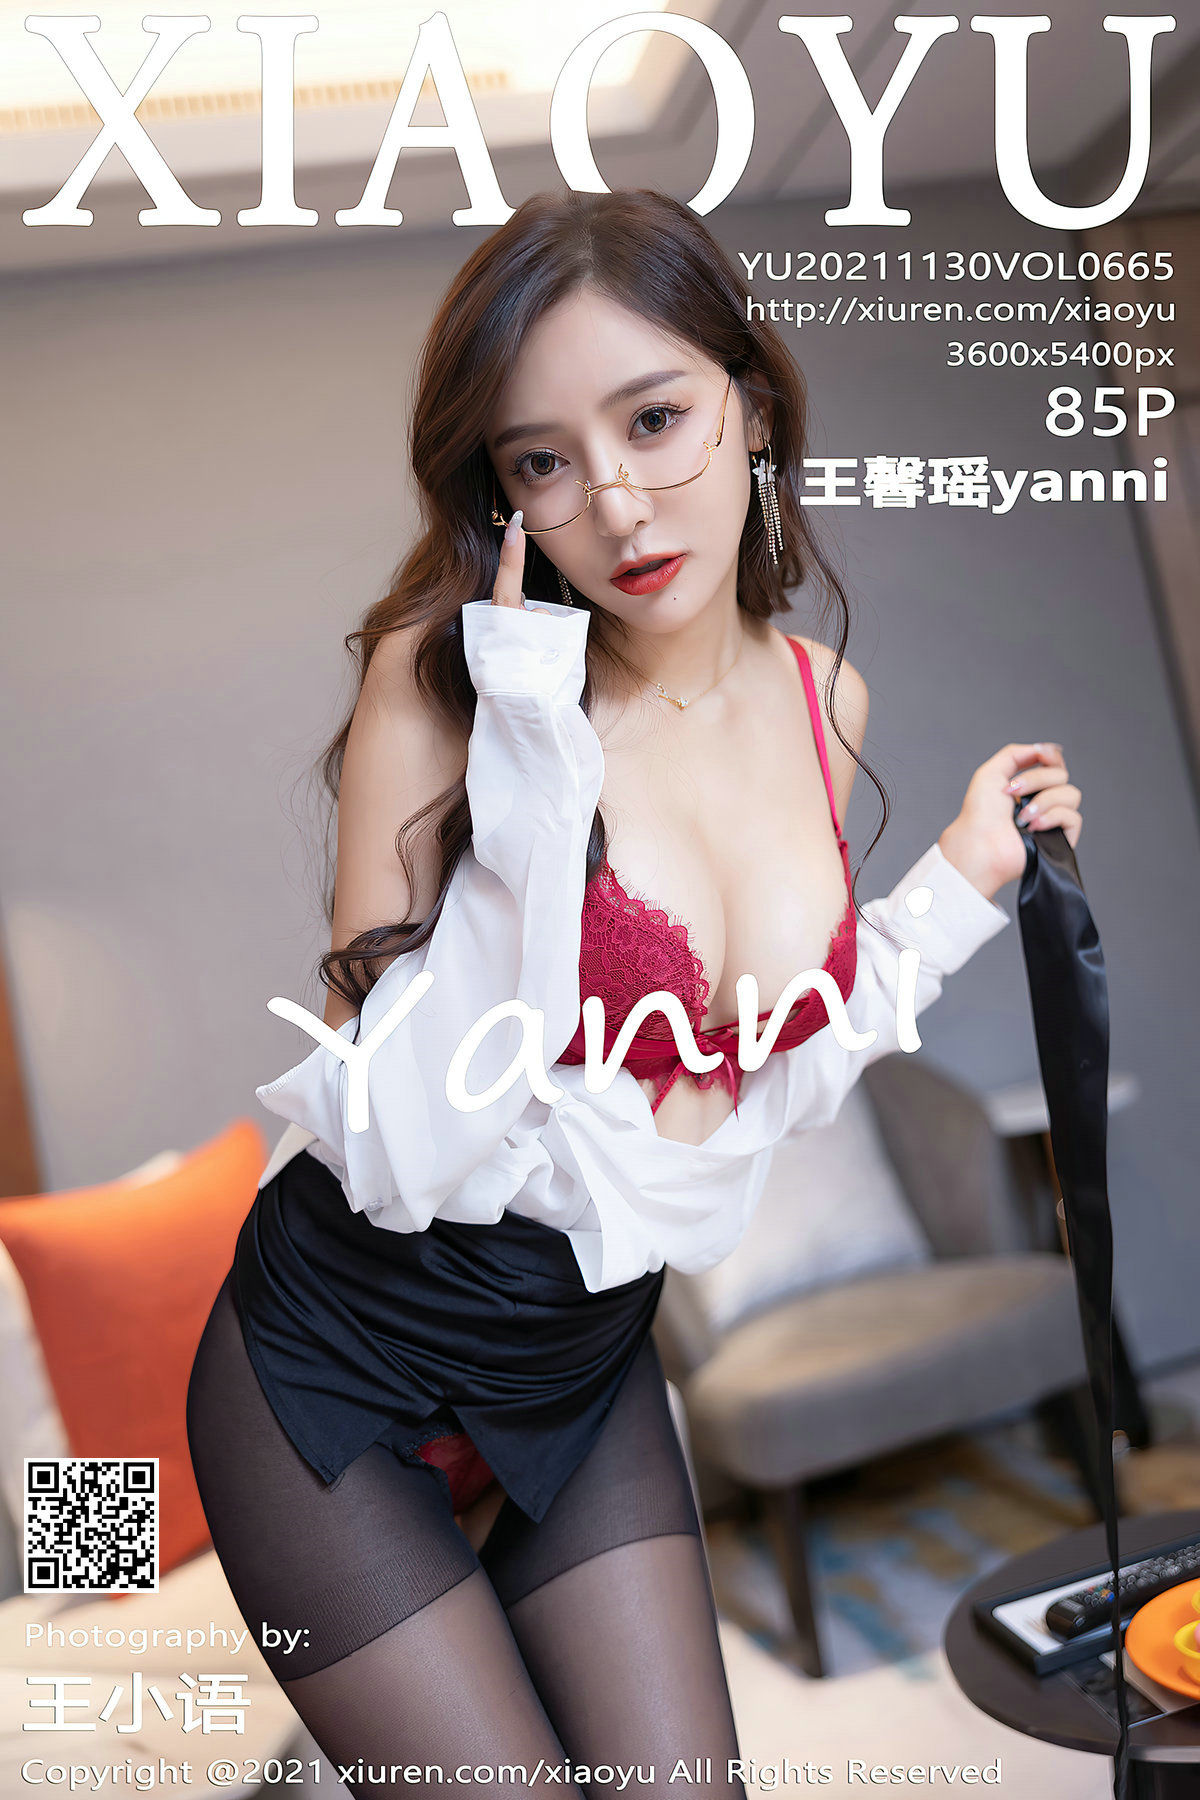 [语画界XIAOYU] Vol.665 王馨瑶yanni/86P